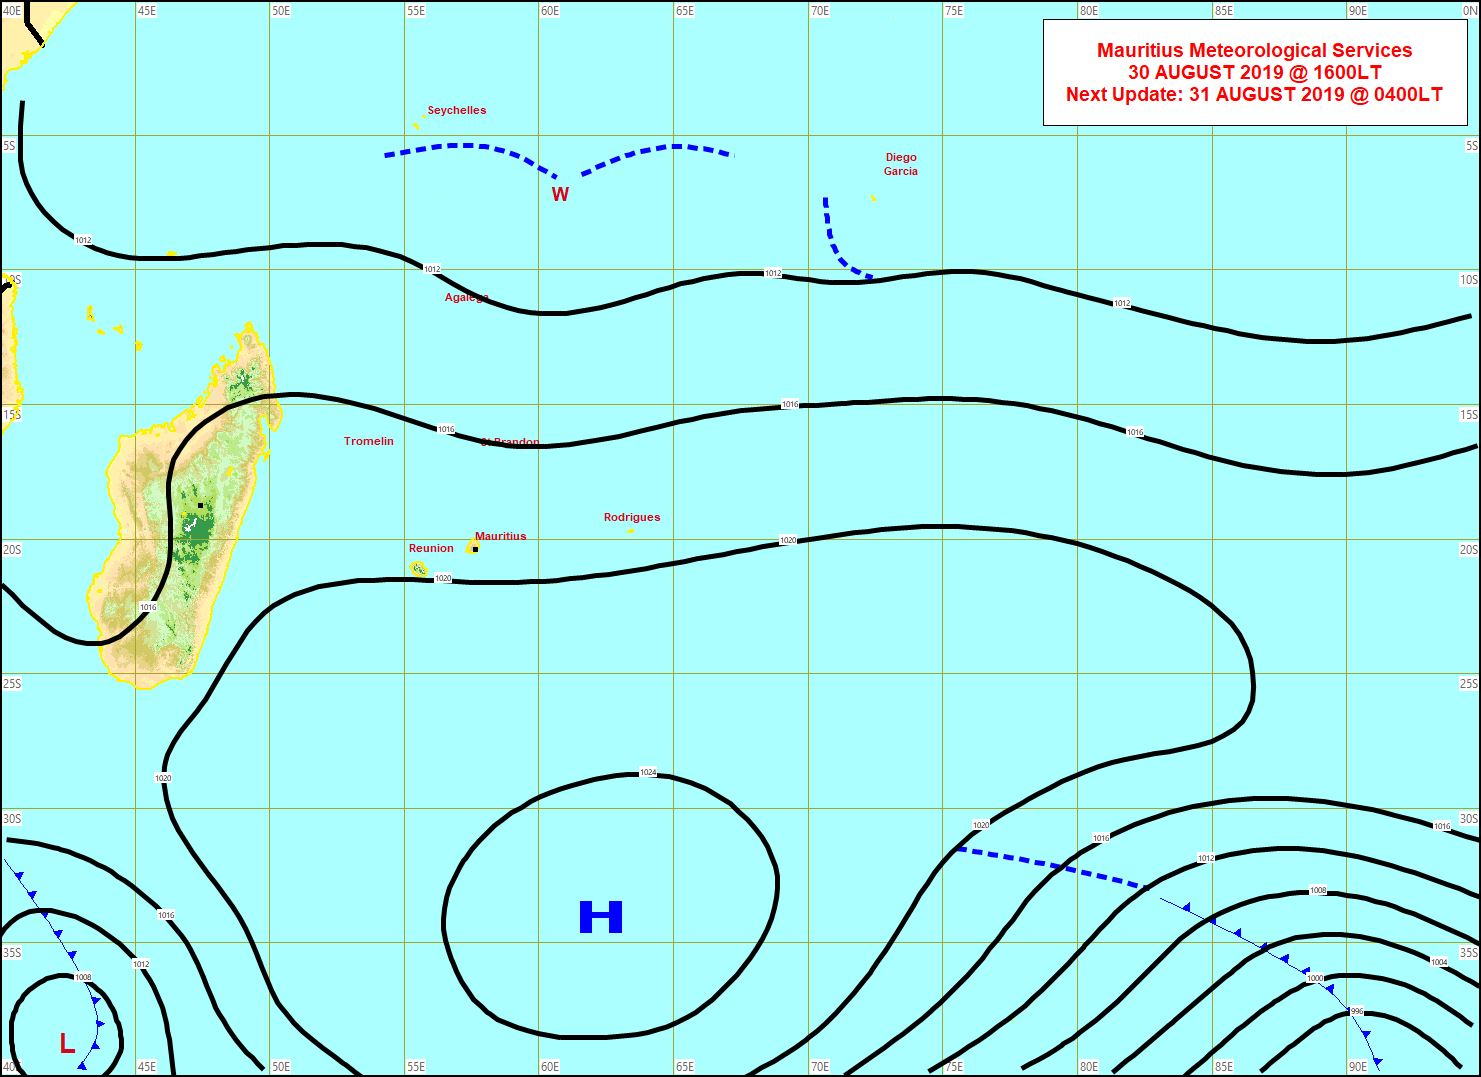 L'anticyclone(H) ,1027hpa demain, domine toujours les débats sur notre zone. MMS